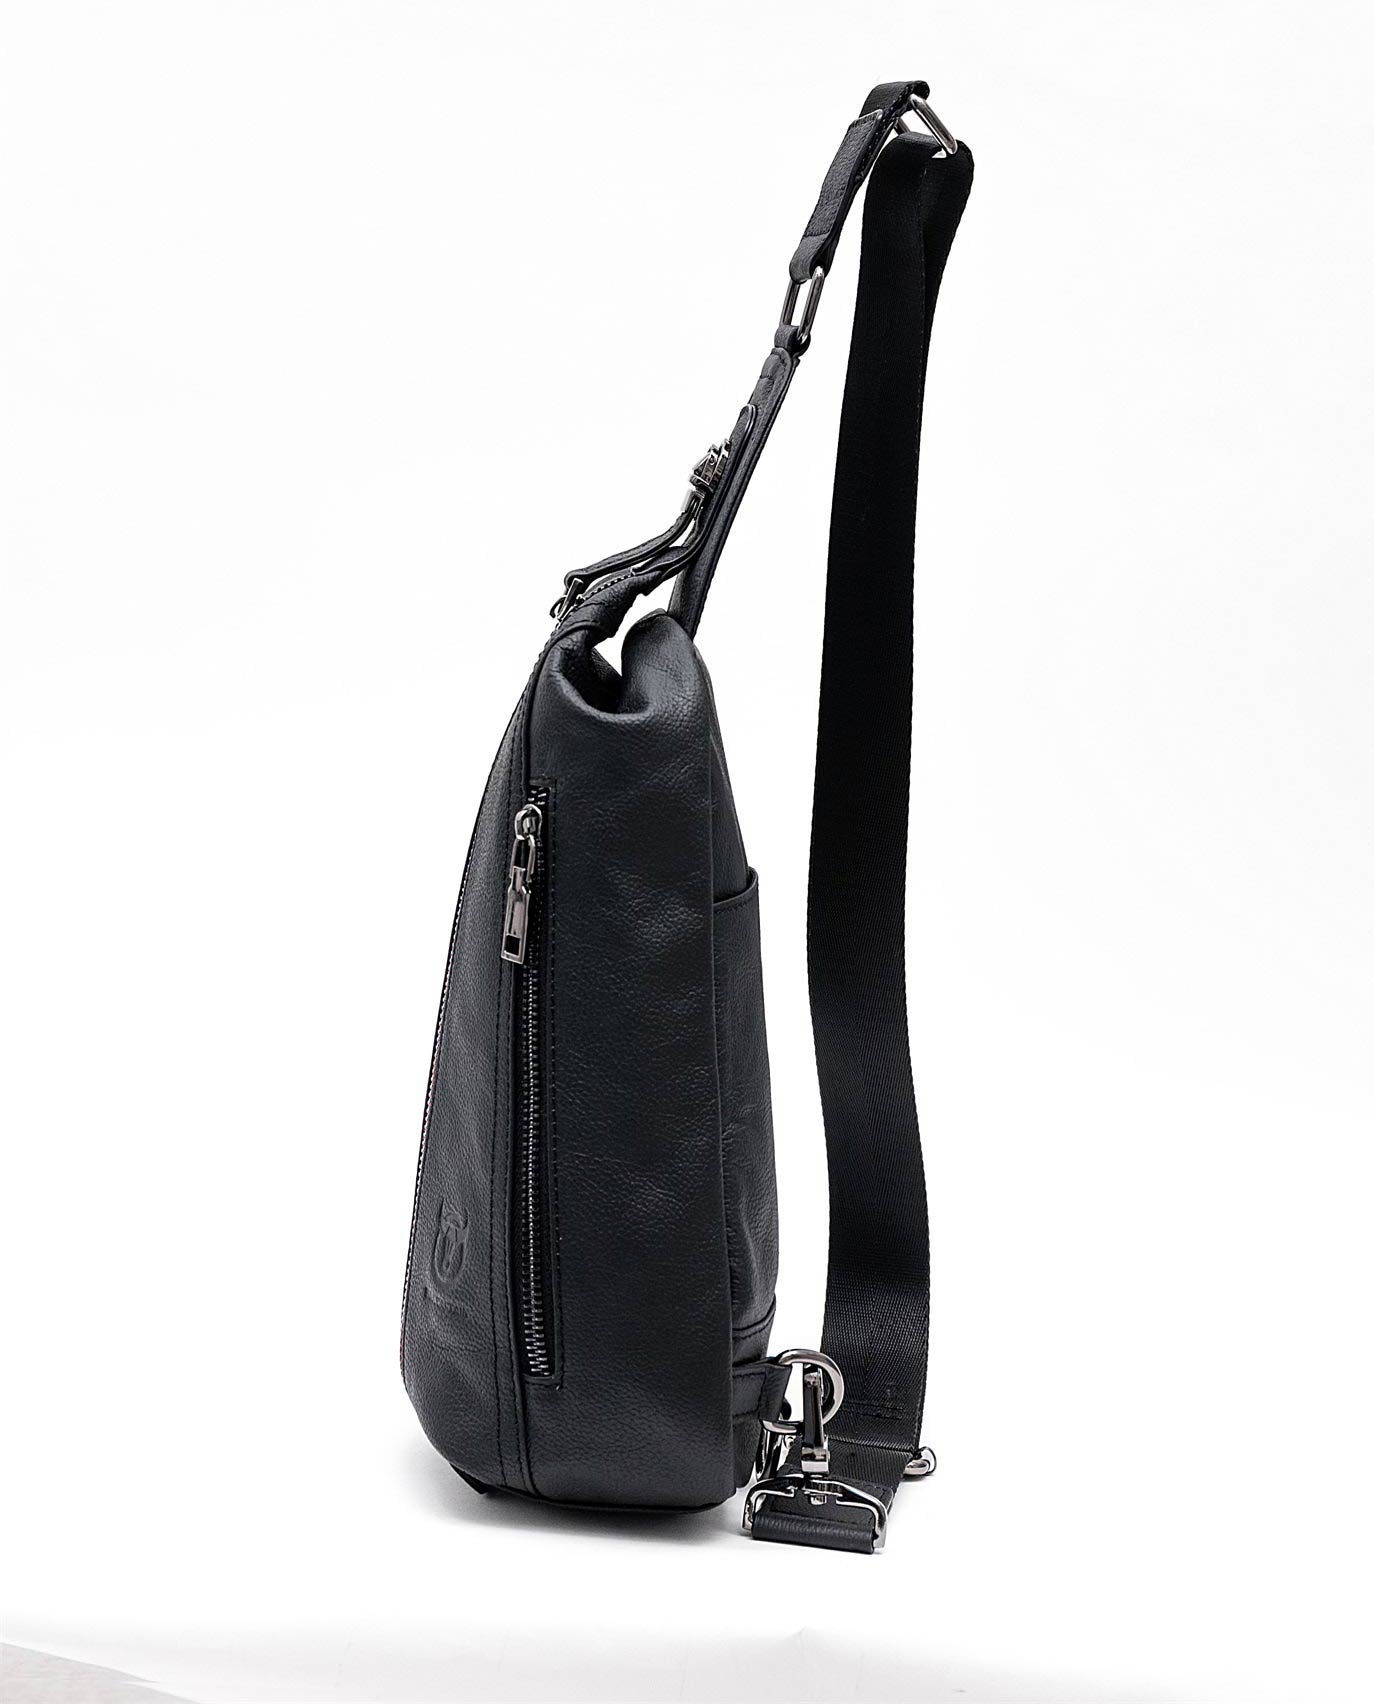 Bullcaptain Leather Chest Sling Bag Genuine Leather Crossbody Small Sachel Bags For Men - 014